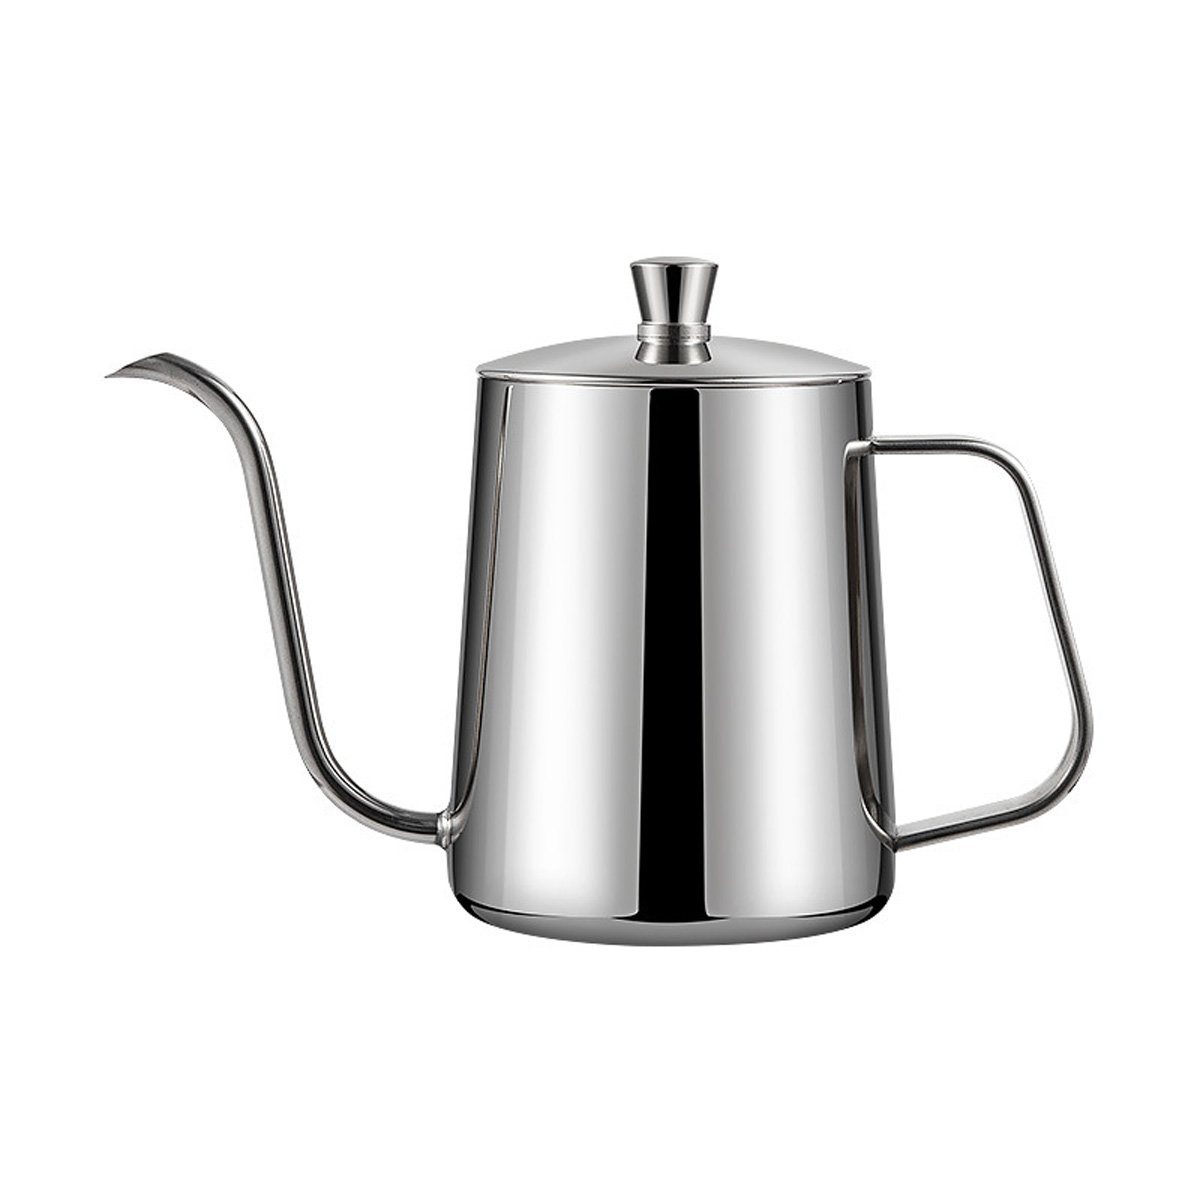 yozhiqu Kaffeekanne Kaffeekanne 600 ml mit schmaler Ausgießtülle, Praktische Ausgusskanne für perfekten Kaffee, ideal für Zuhause